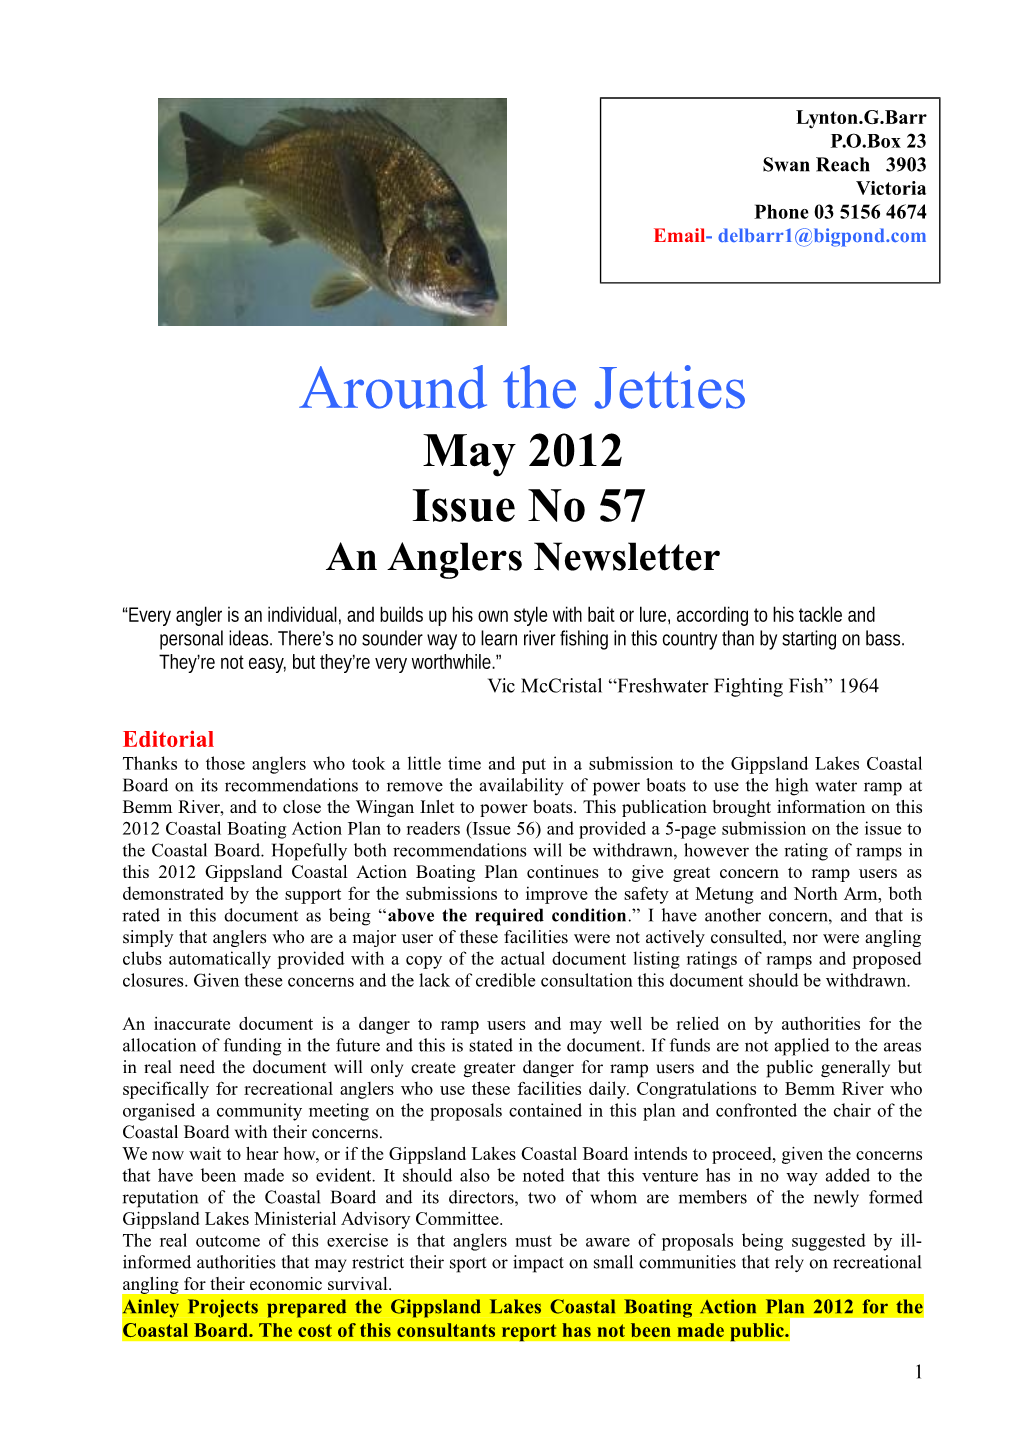 Around the Jetties 57